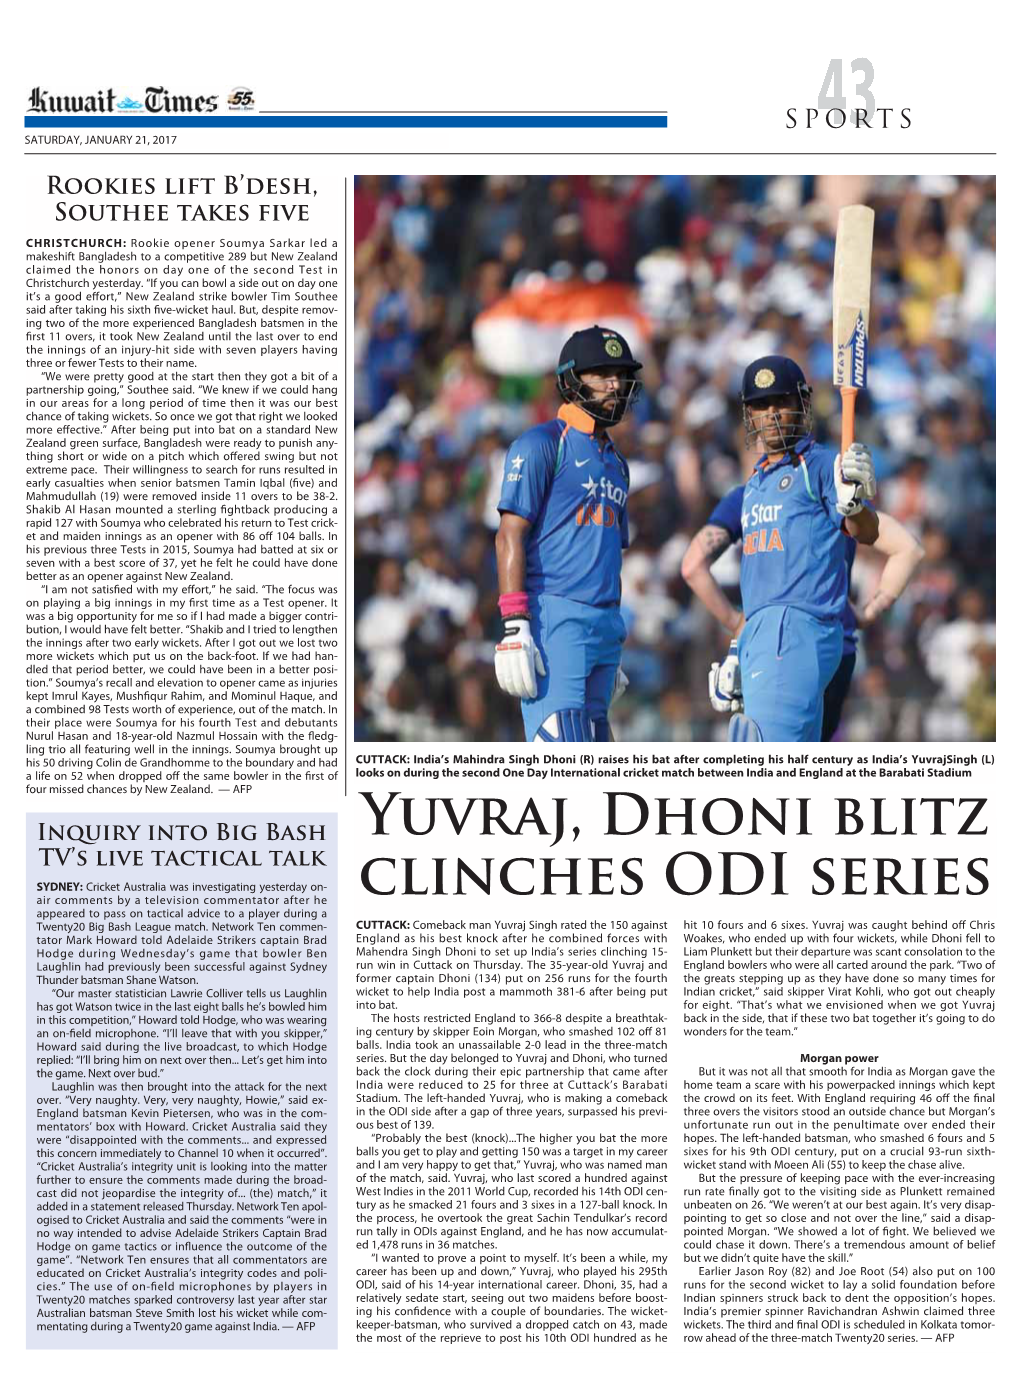 Yuvraj, Dhoni Blitz Clinches ODI Series